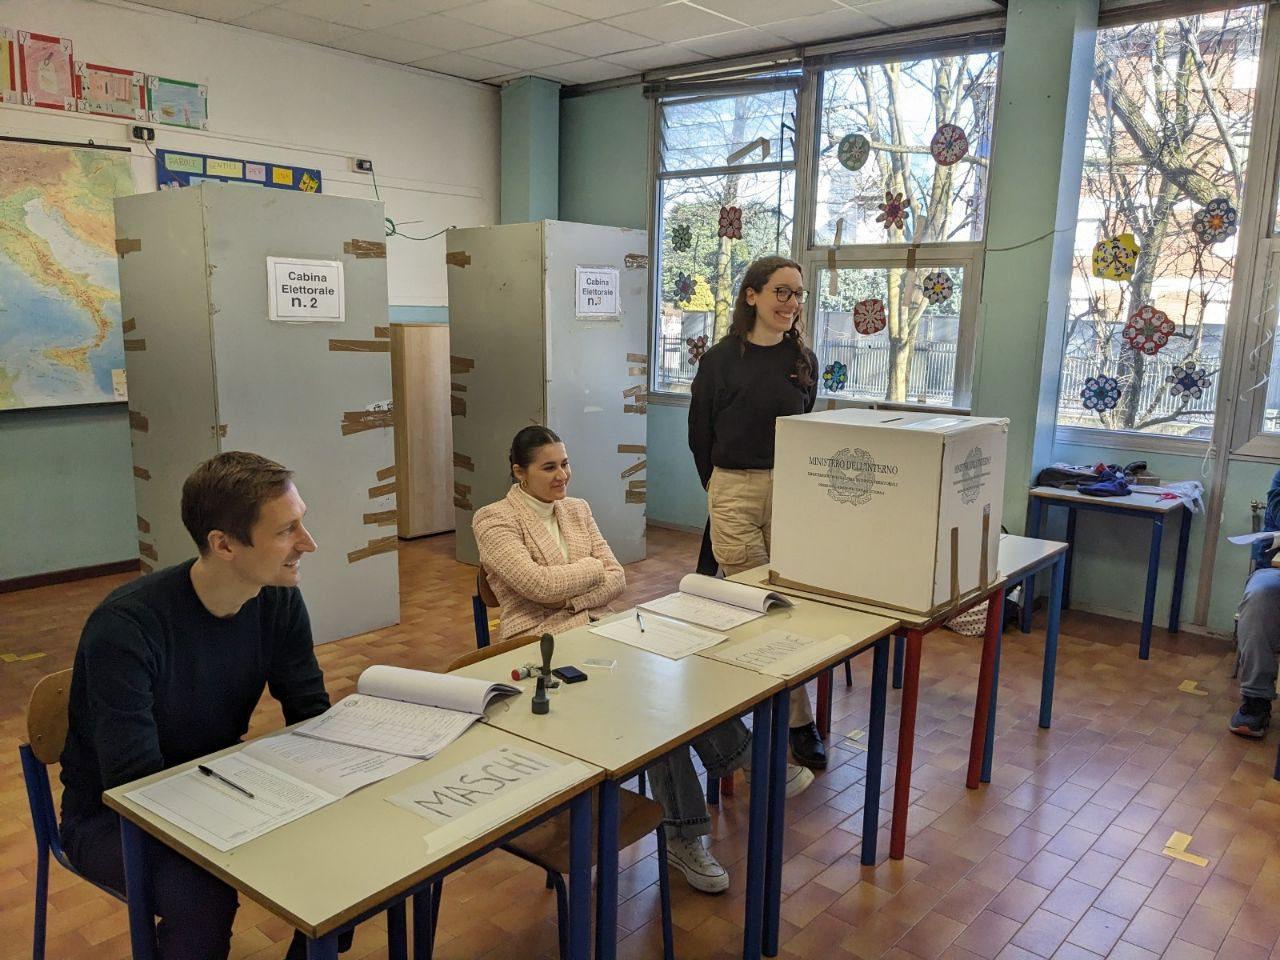 Elezioni comunali 24: risultati di Uboldo, Ceriano, Solaro, Misinto, Tradate, Rovellasca in diretta